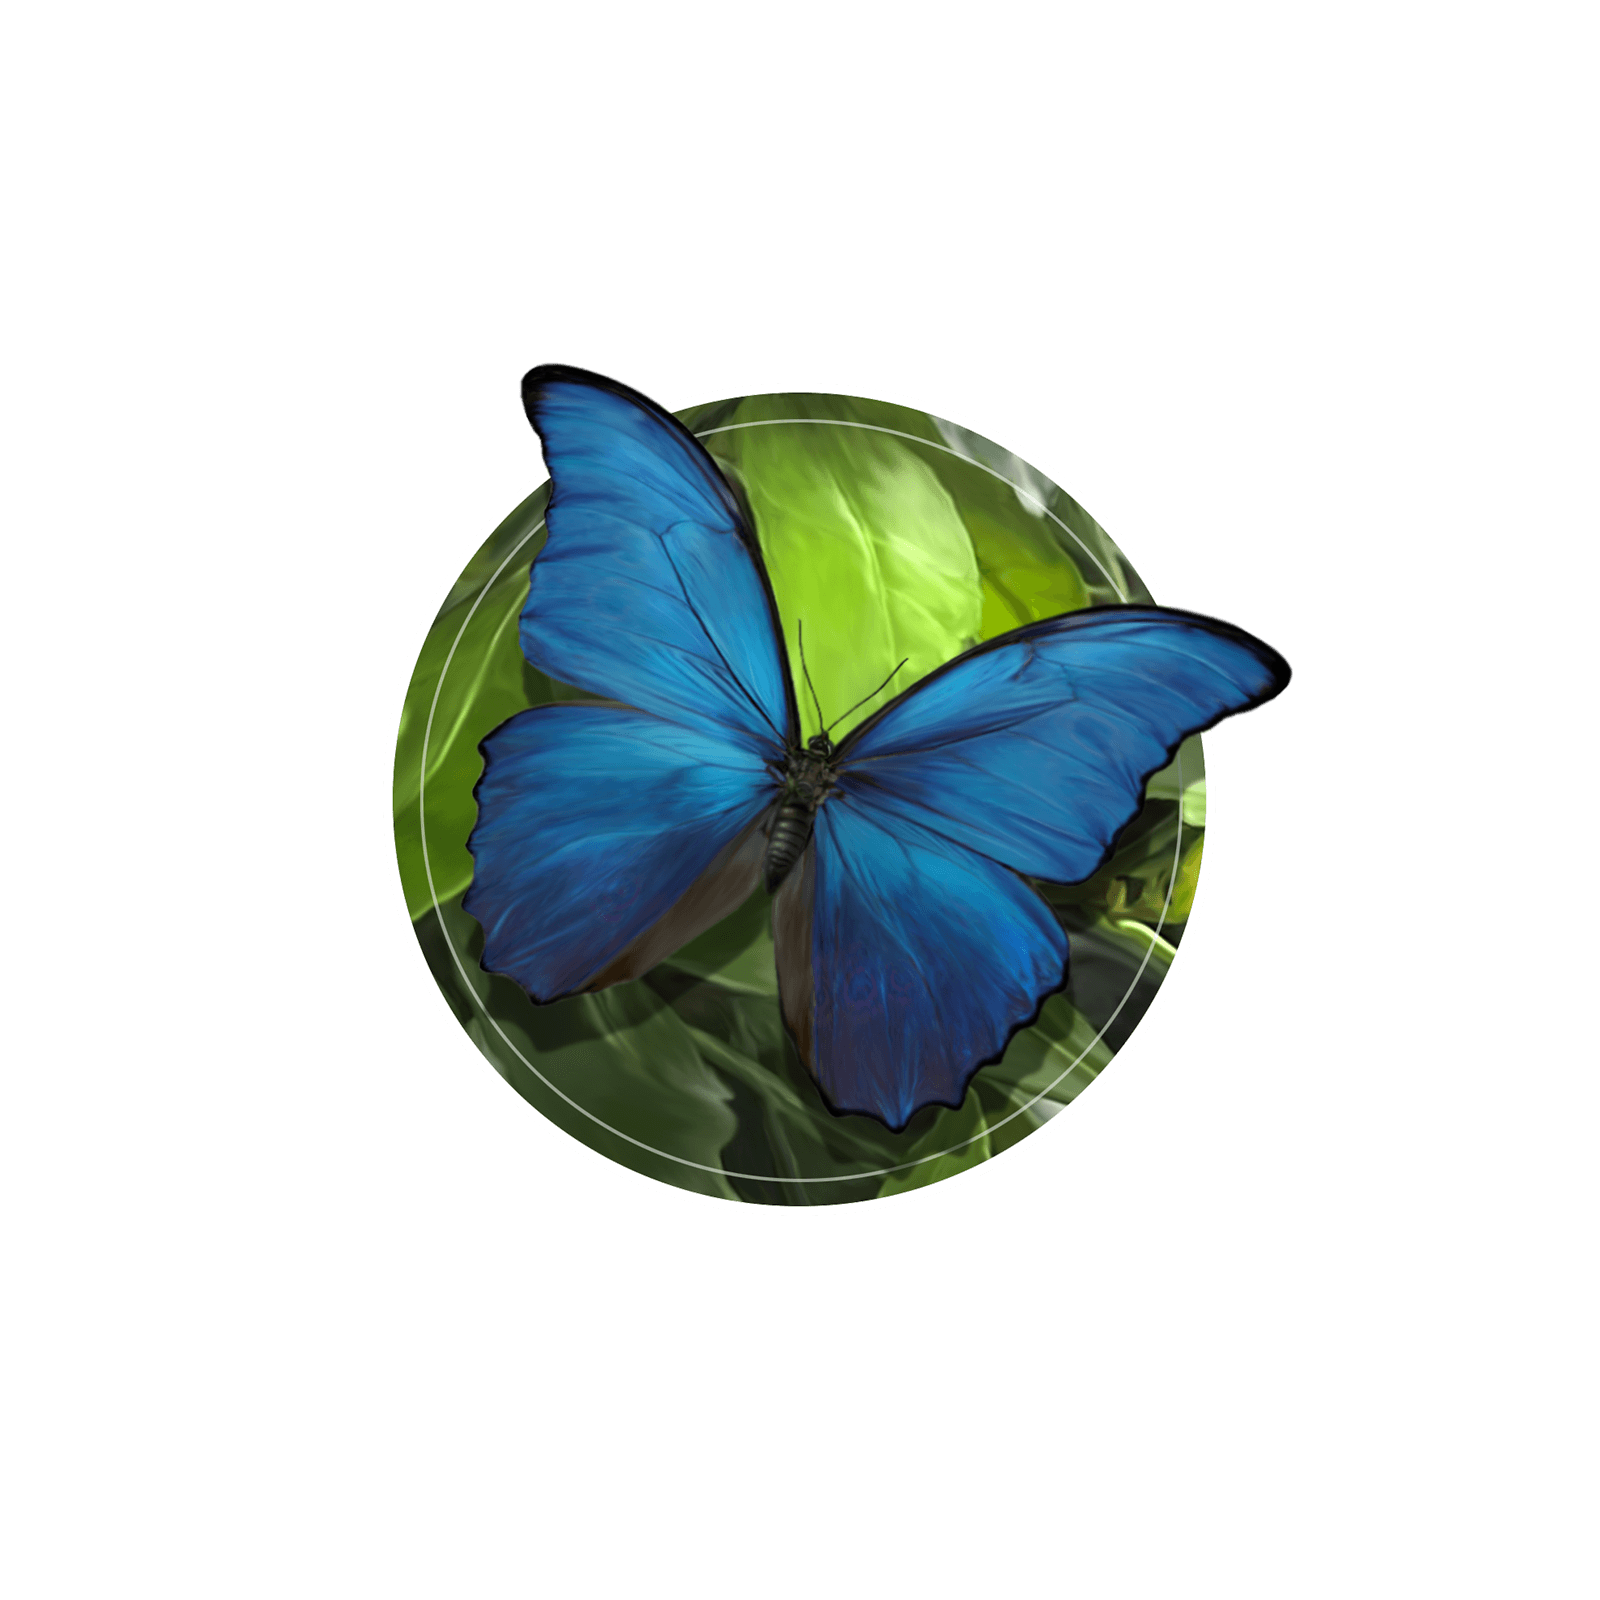 Ilustração de uma borboleta azul iridescente no tronco de uma árvore